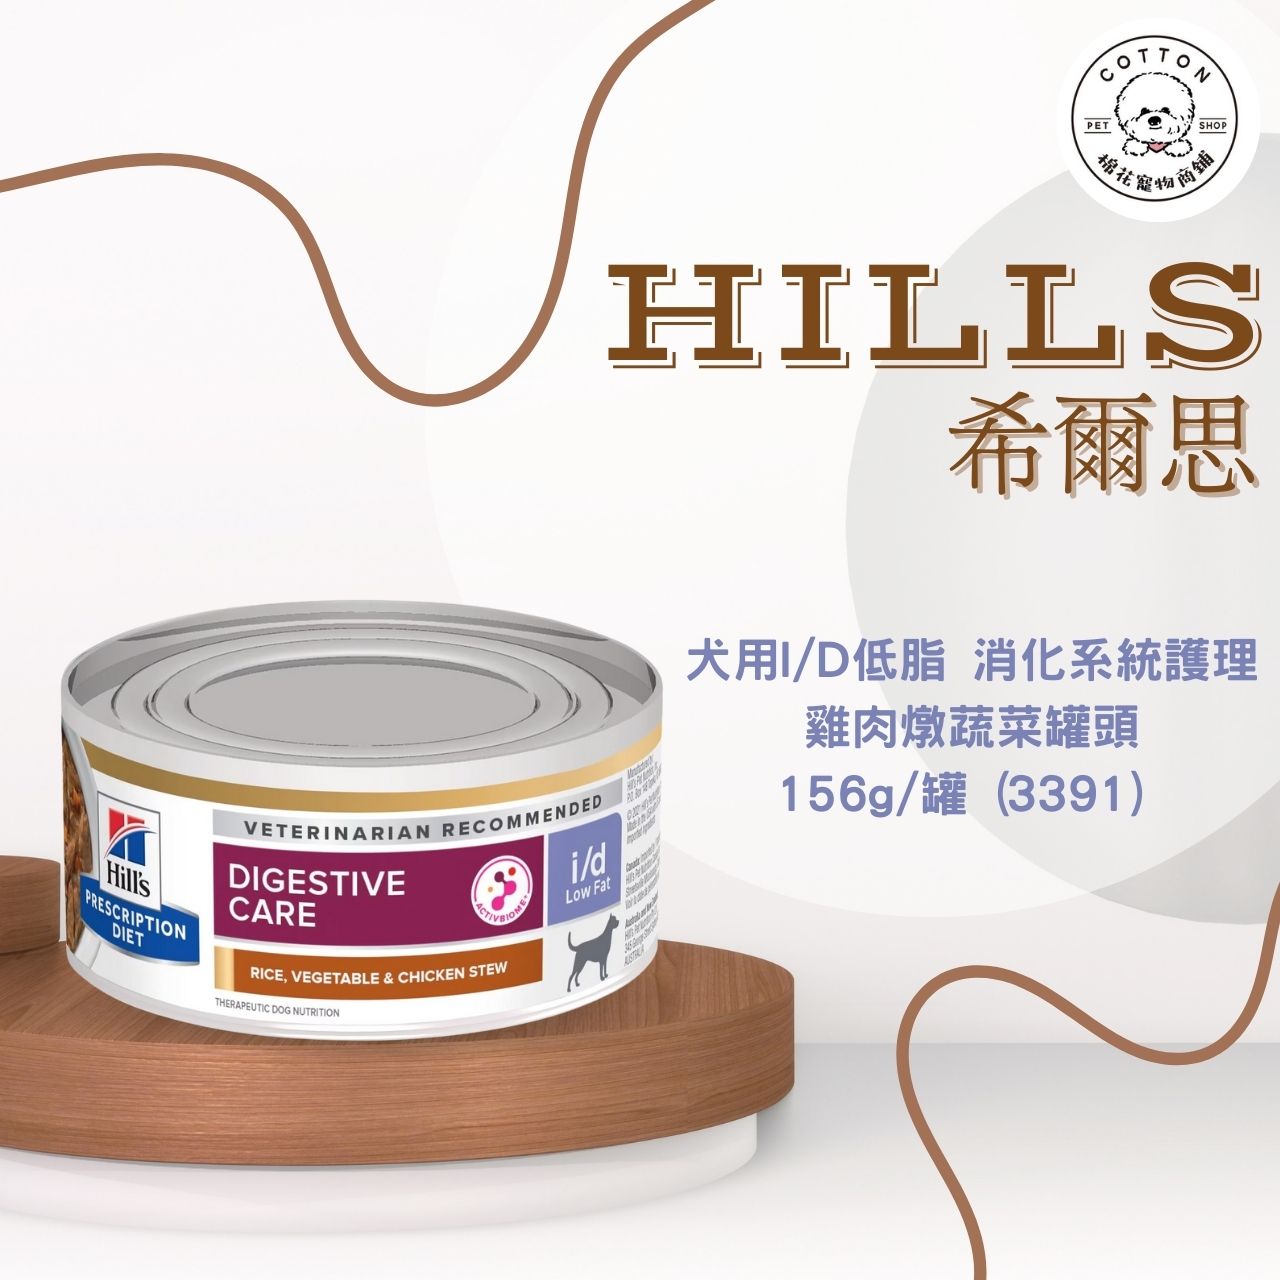 棉花寵物❤️【Hills 希爾思處方】犬用I/D 低脂 消化系統護理 雞肉燉蔬菜罐頭 156g/罐(3391)